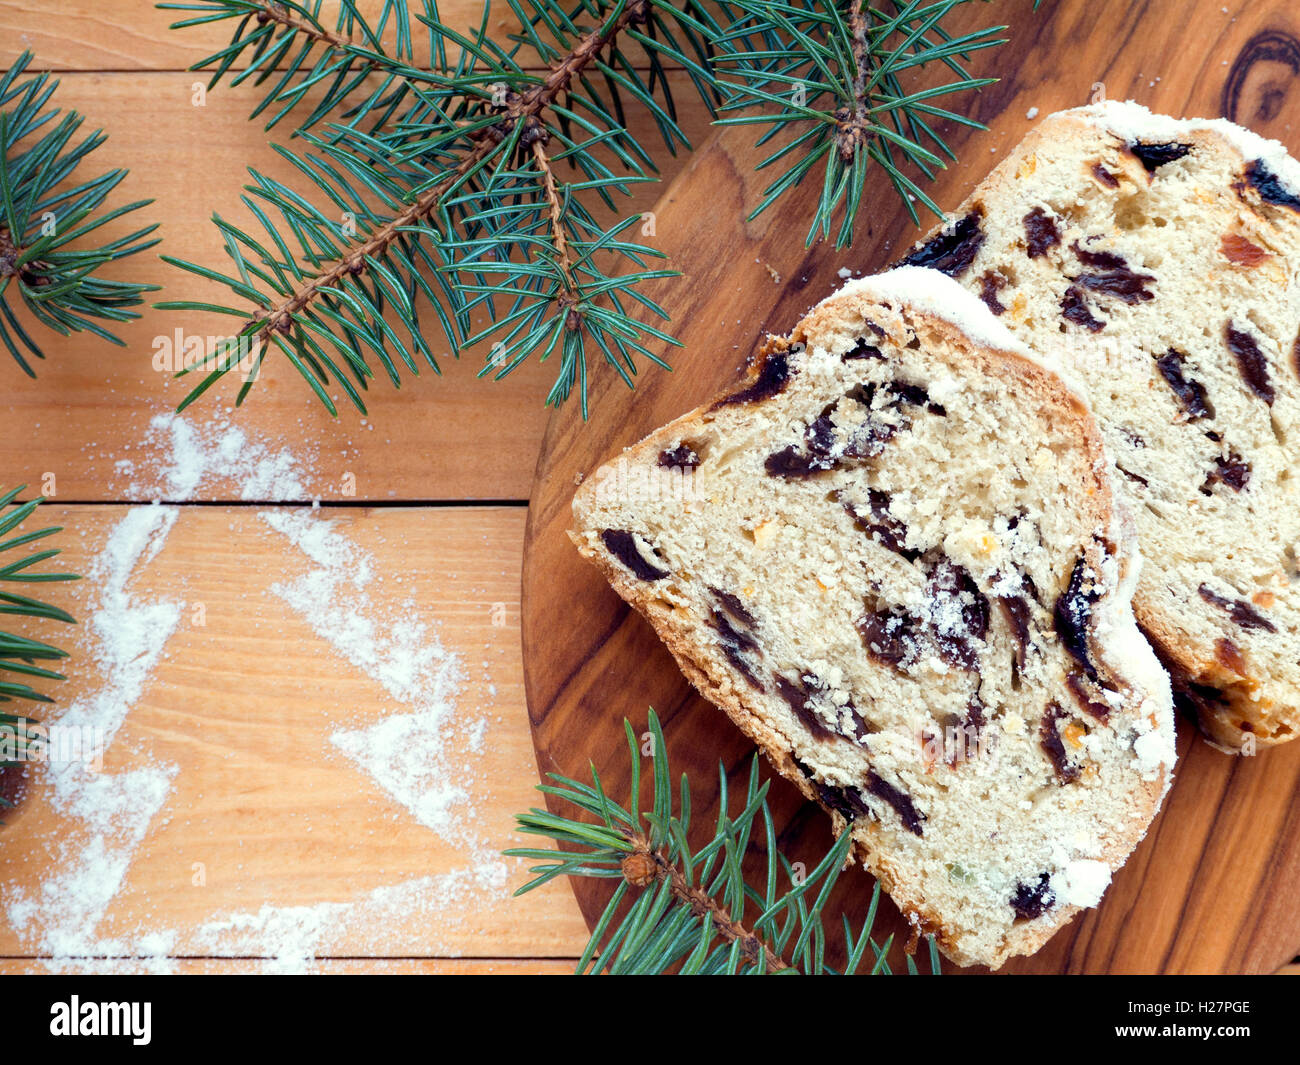 Gâteau de Noël allemand Stollen texturé sur la planche de bois et de branches d'épinette bleue sur les planches en bois avec du sucre t Noël Banque D'Images